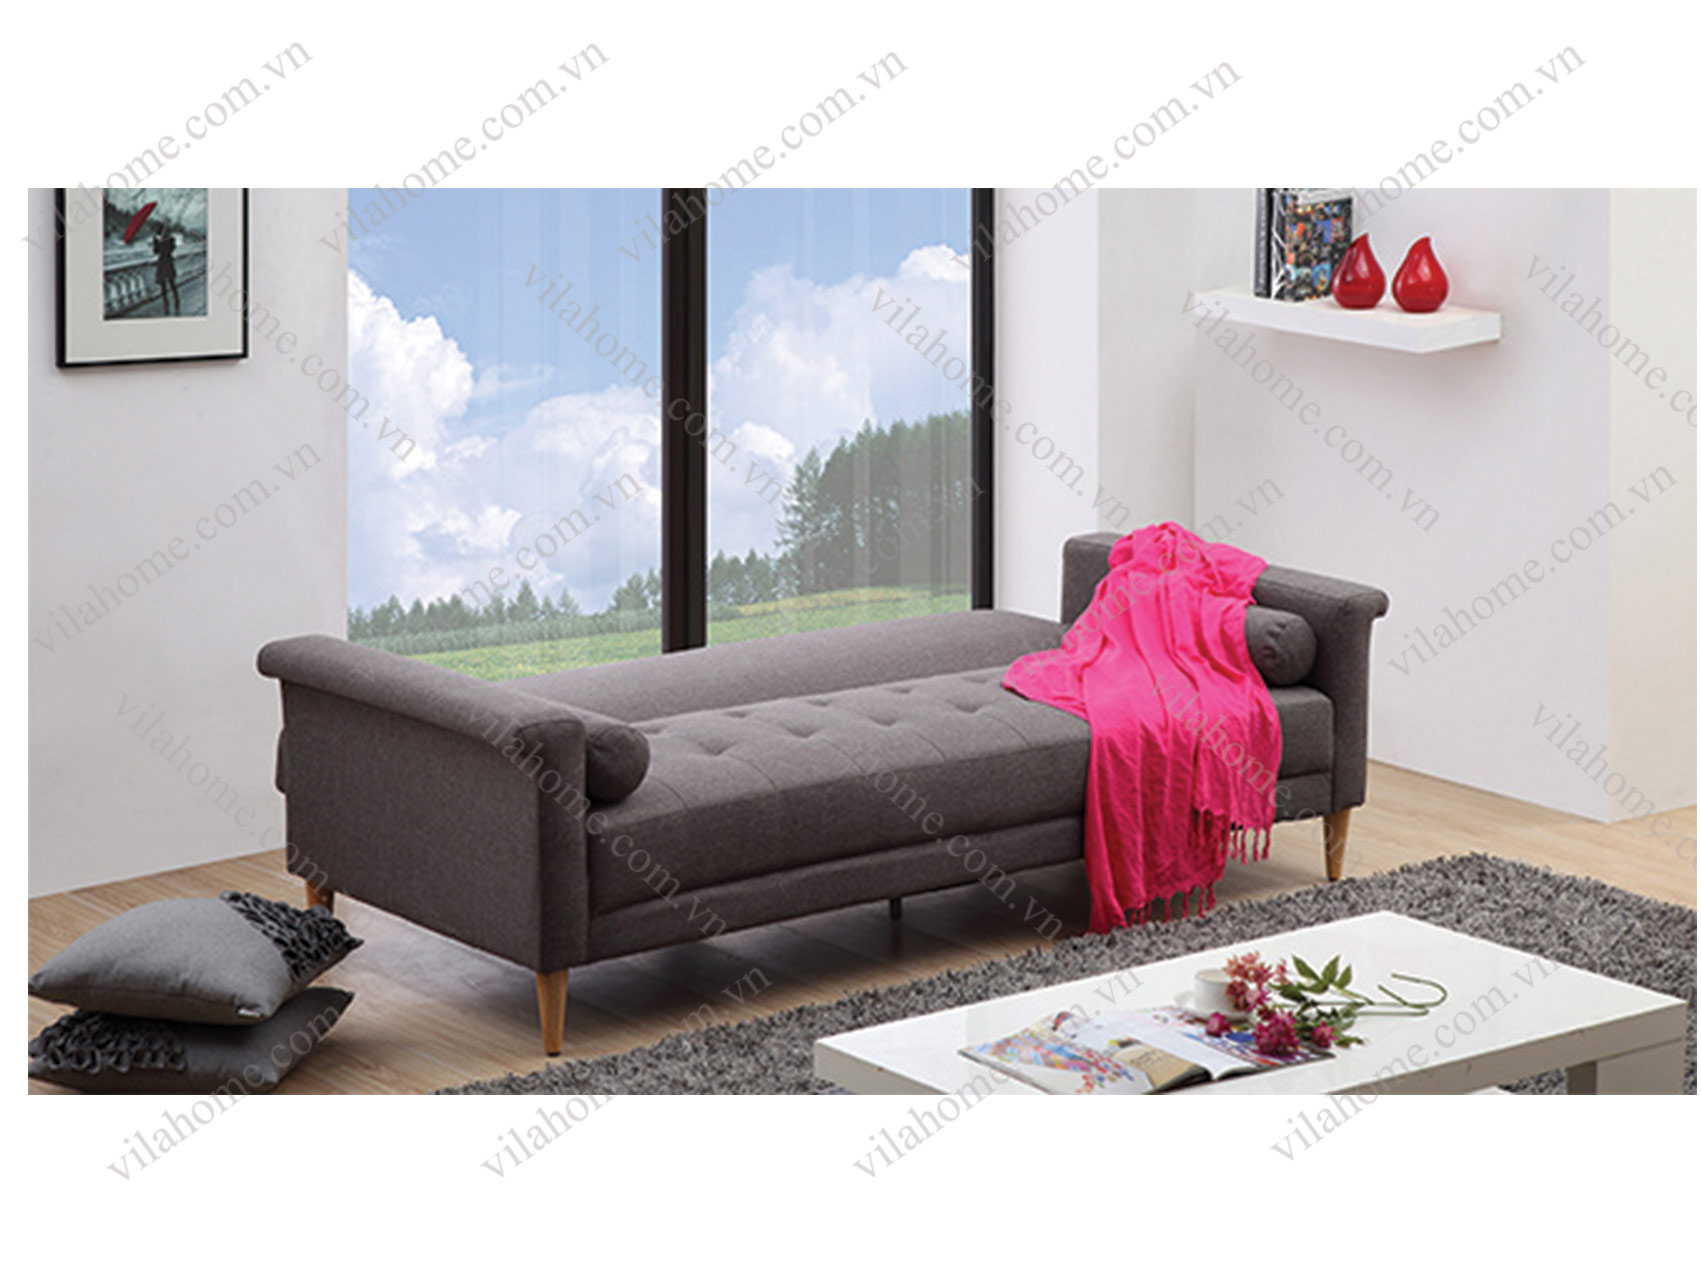 Ghế sofa bed 1.4m tương đương kích thước một chiếc giường đơn nhỏ gọn